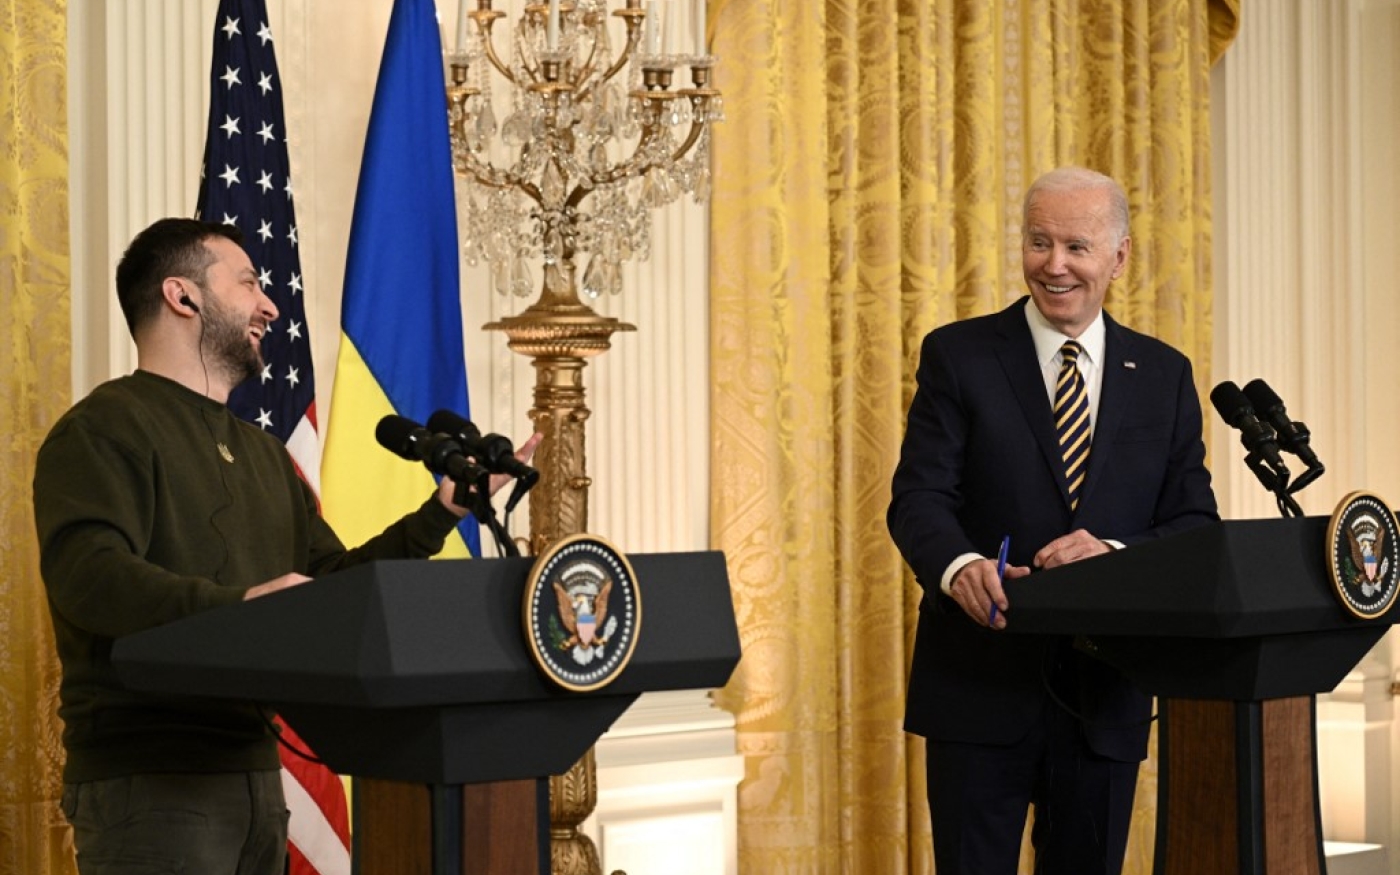 Le président américain Joe Biden et son homologue ukrainien Volodymyr Zelensky tiennent une conférence de presse à la Maison-Blanche, le 21 décembre 2022 à Washington (AFP)